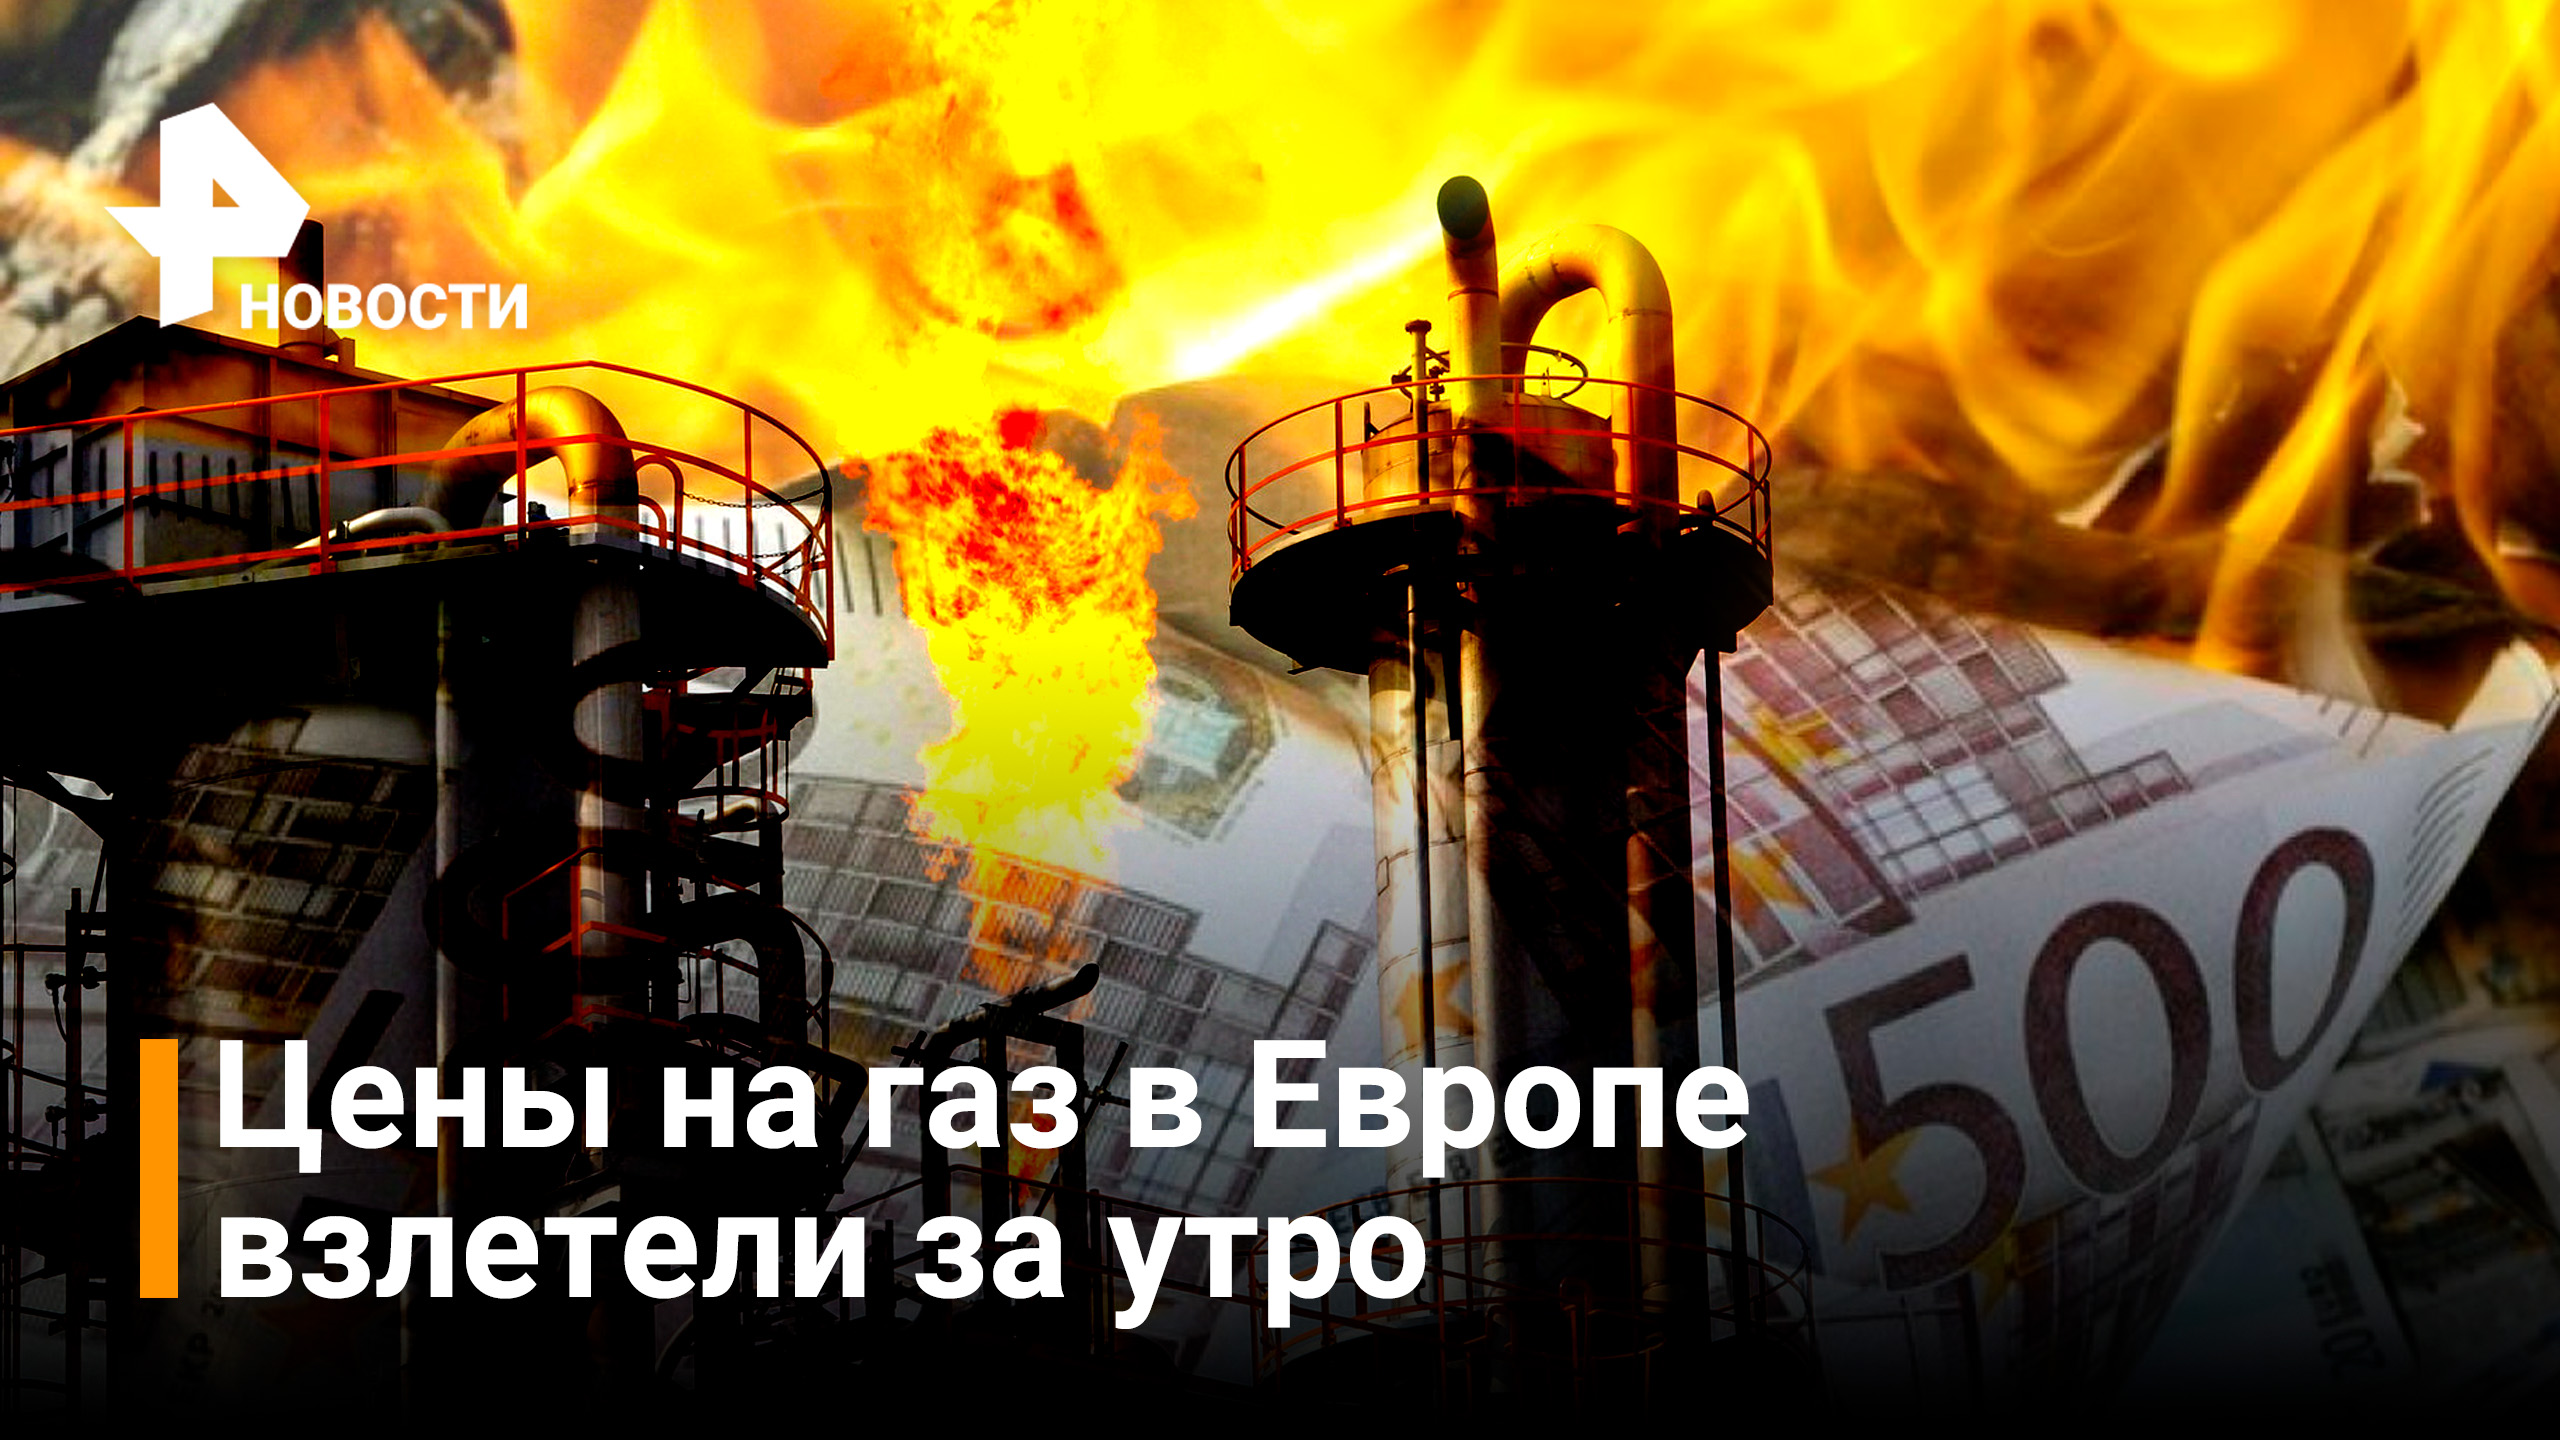 Цены на газ в Европе взлетели на 16 процентов / Новости РЕН